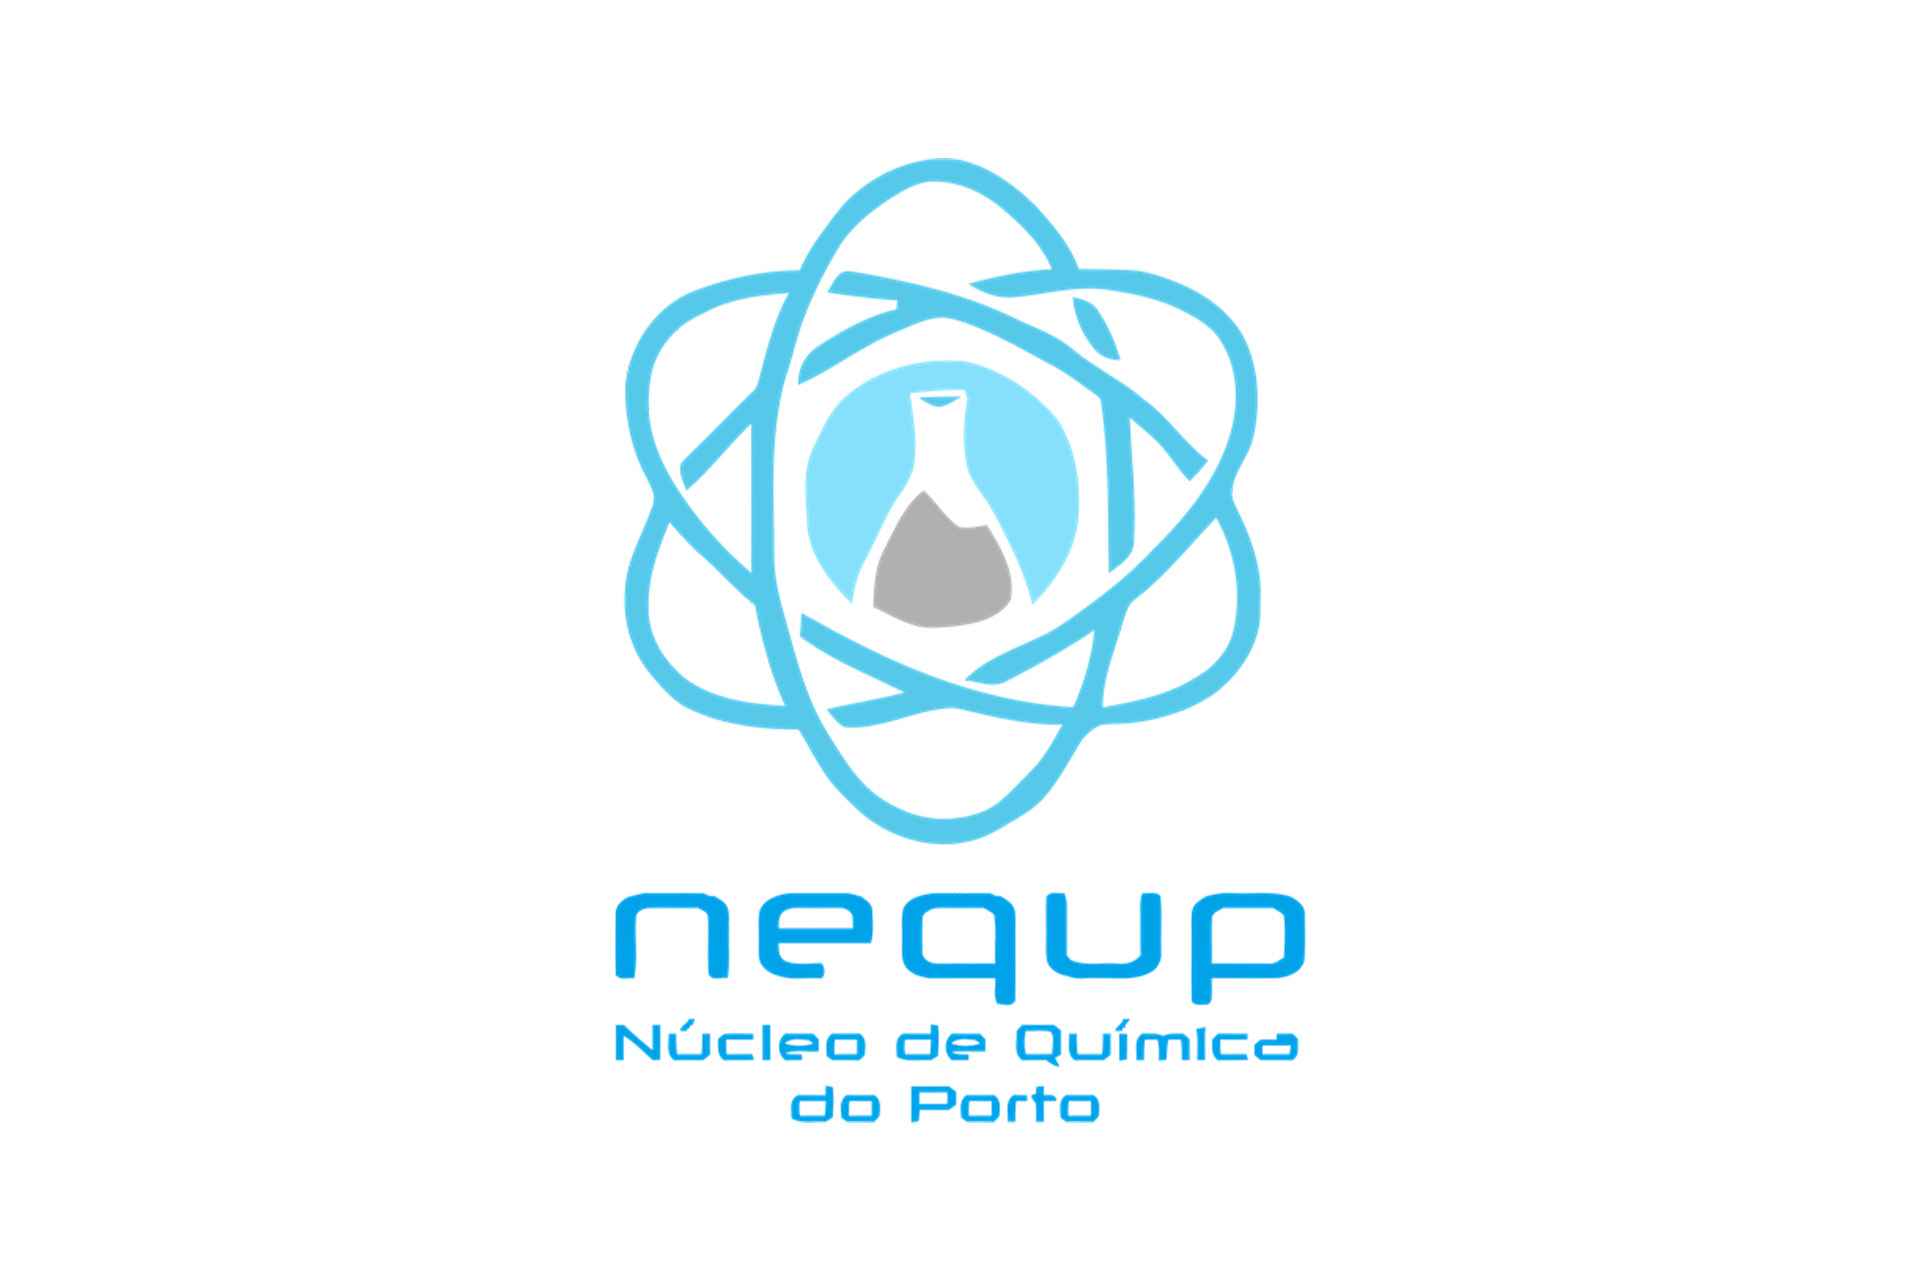 NEQUP Student Center logo